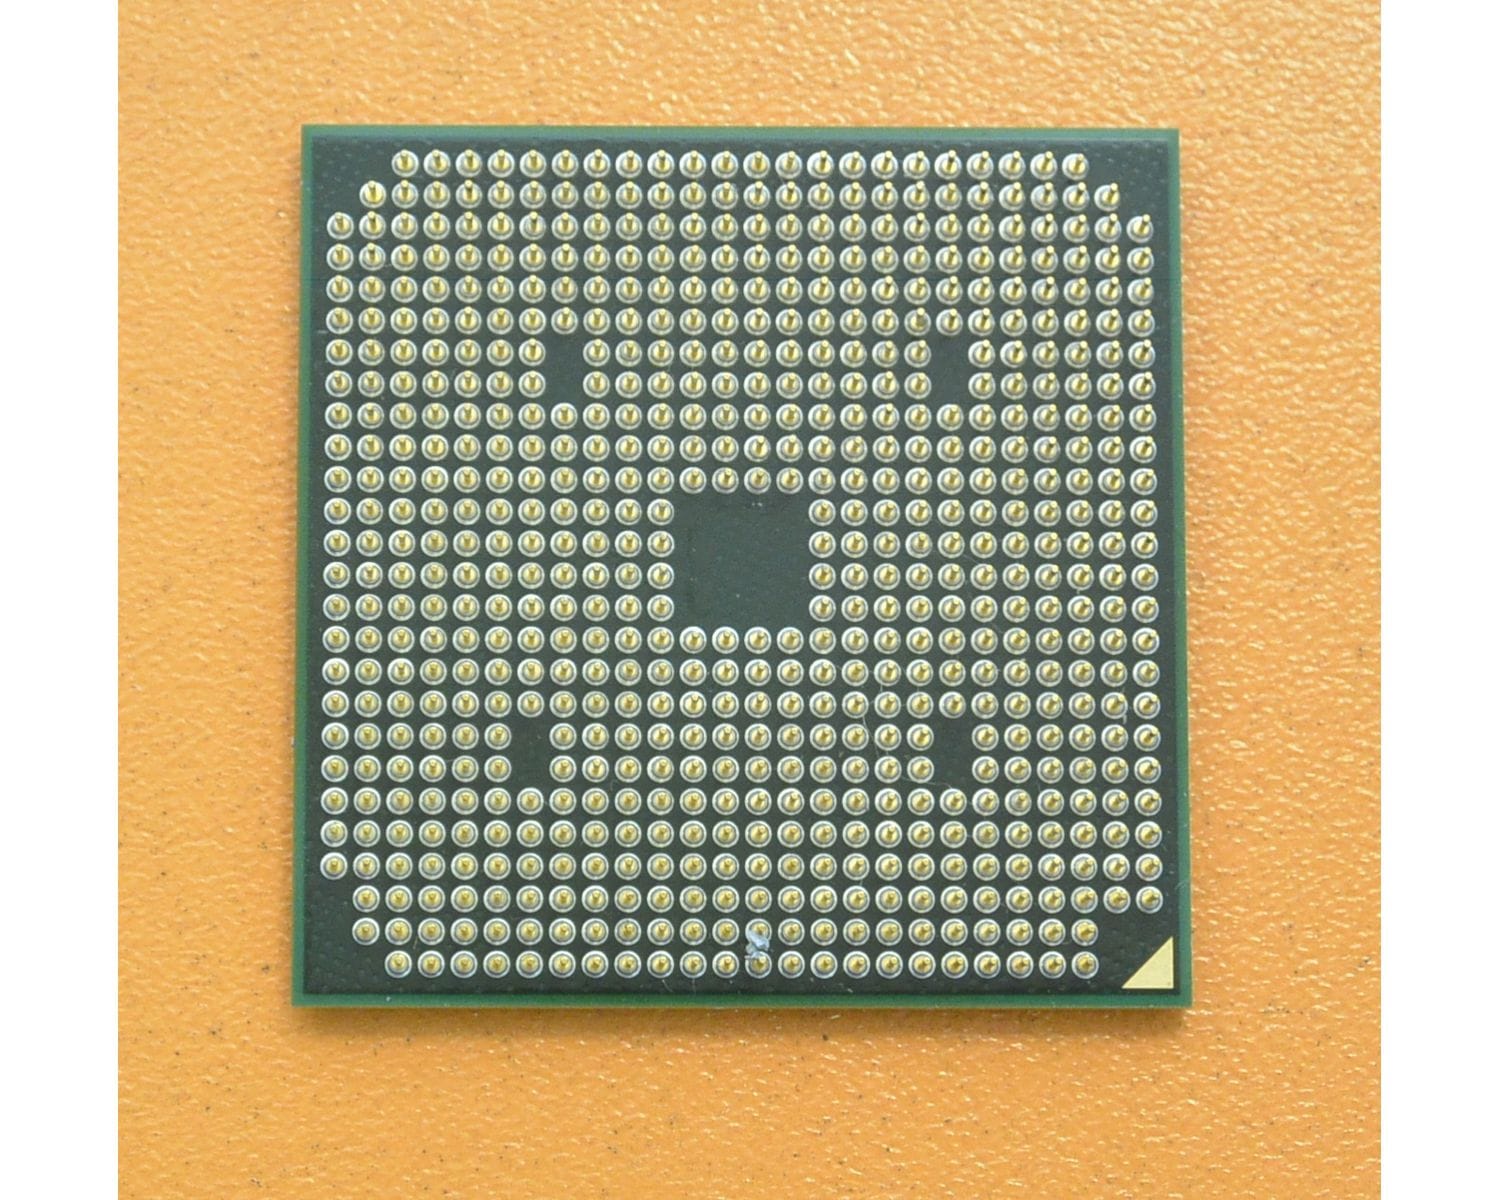 Turion 64 x2 tl 64. Процессор AMD a6-3400m. AMD Turion 64 x2 TL-60. AMD Turion 64 x2 Socket. Процессор AMD a6-3420m am3420ddx43gx.